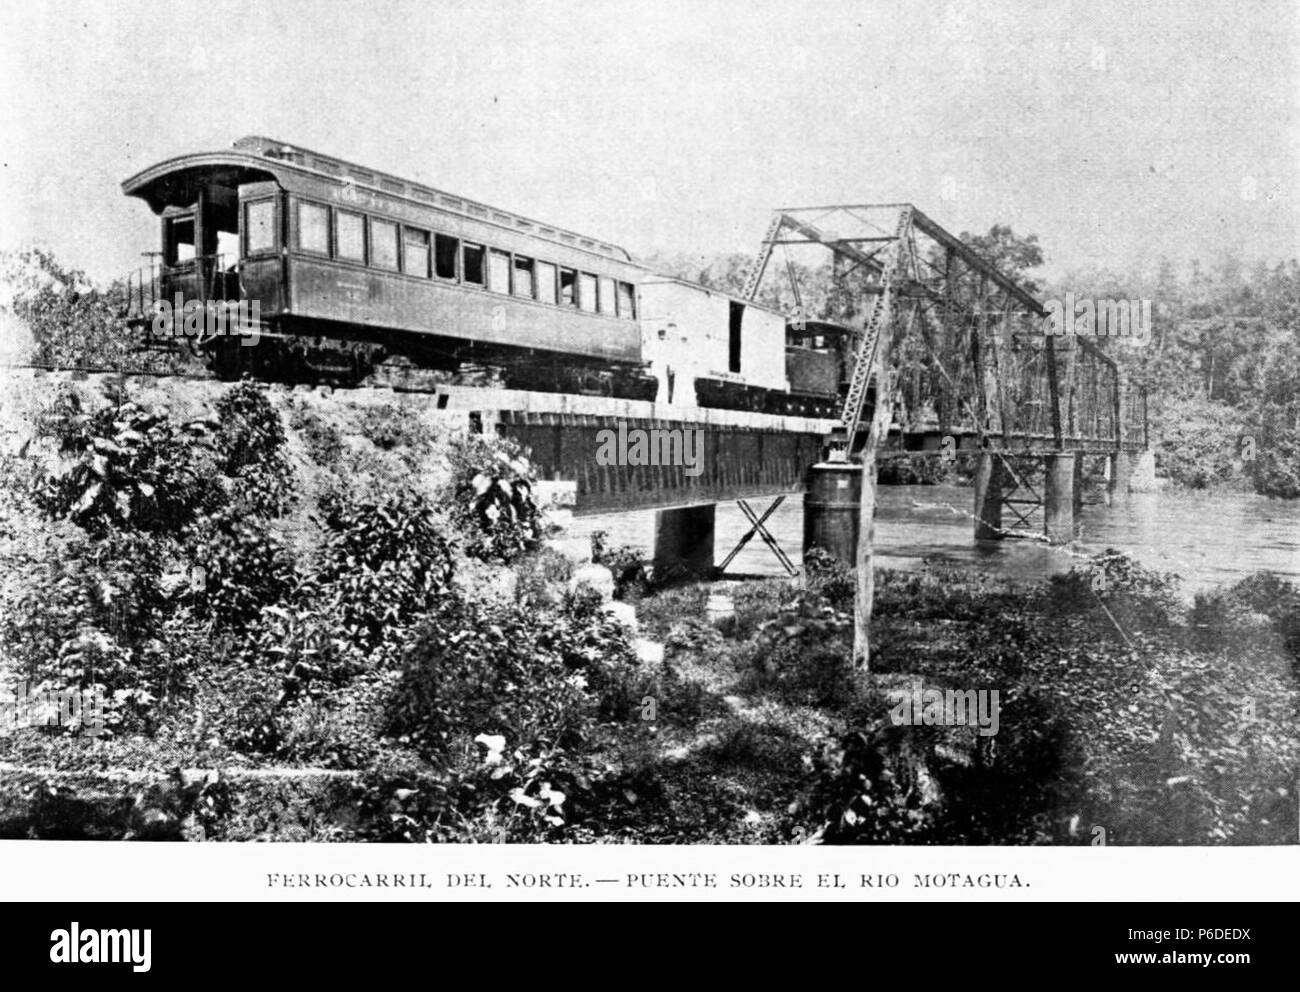 File:Puente del ex-ferrocarril Midland sobre el Sarmiento.jpg